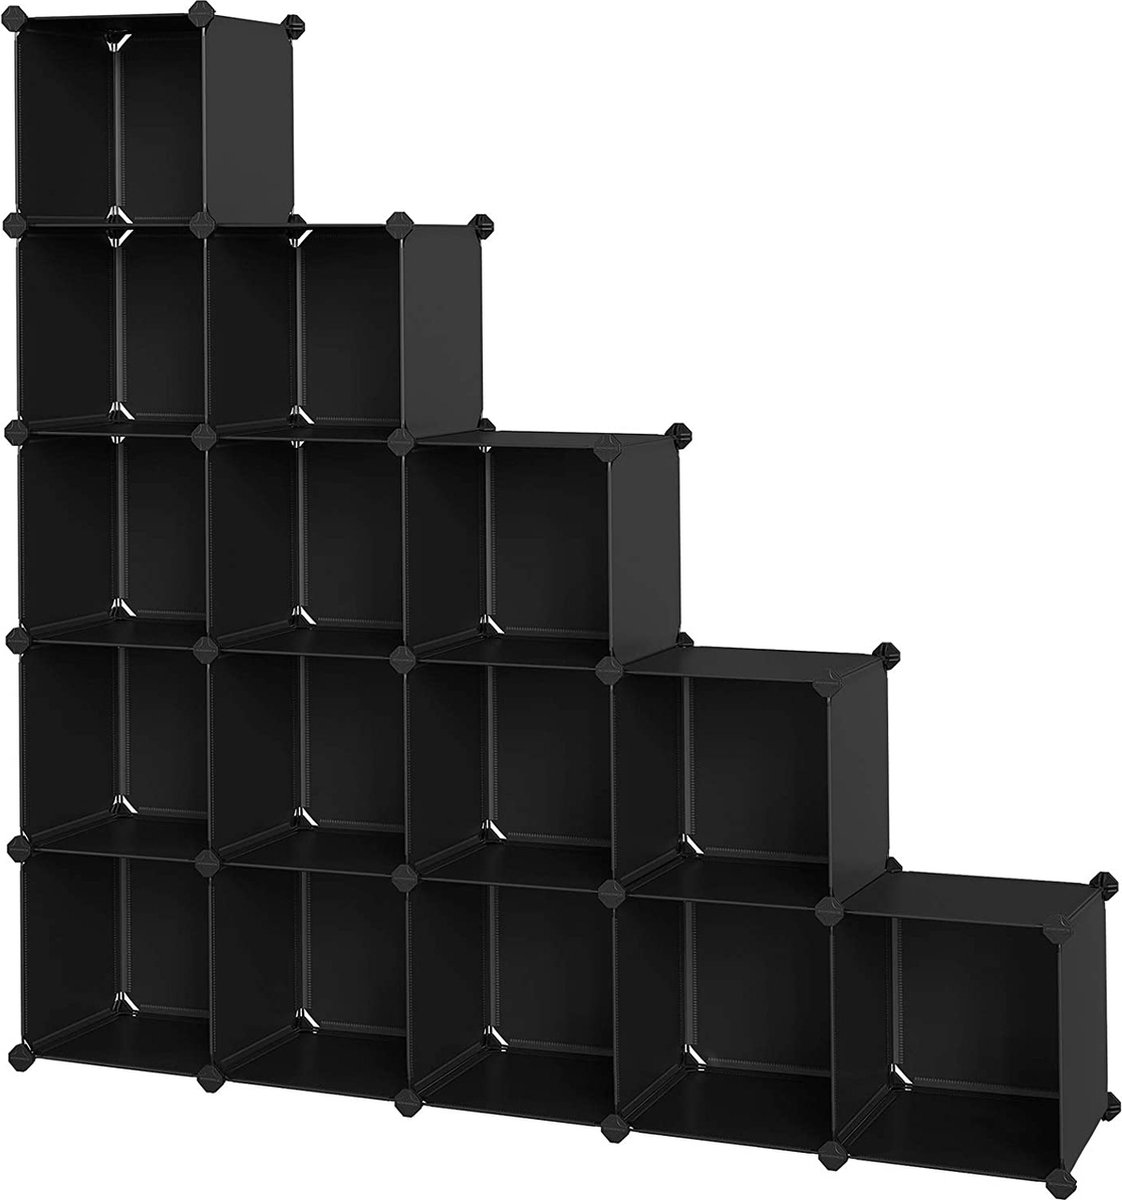 16 Cube Shelving System, schoenenrek, DIY cube rack, stapelbare, boutloze rekken van PP-kunststof, garderobe, ruimteverdeler, voor slaapkamer, kantoor, zwart LPC44BK (6095515673621)